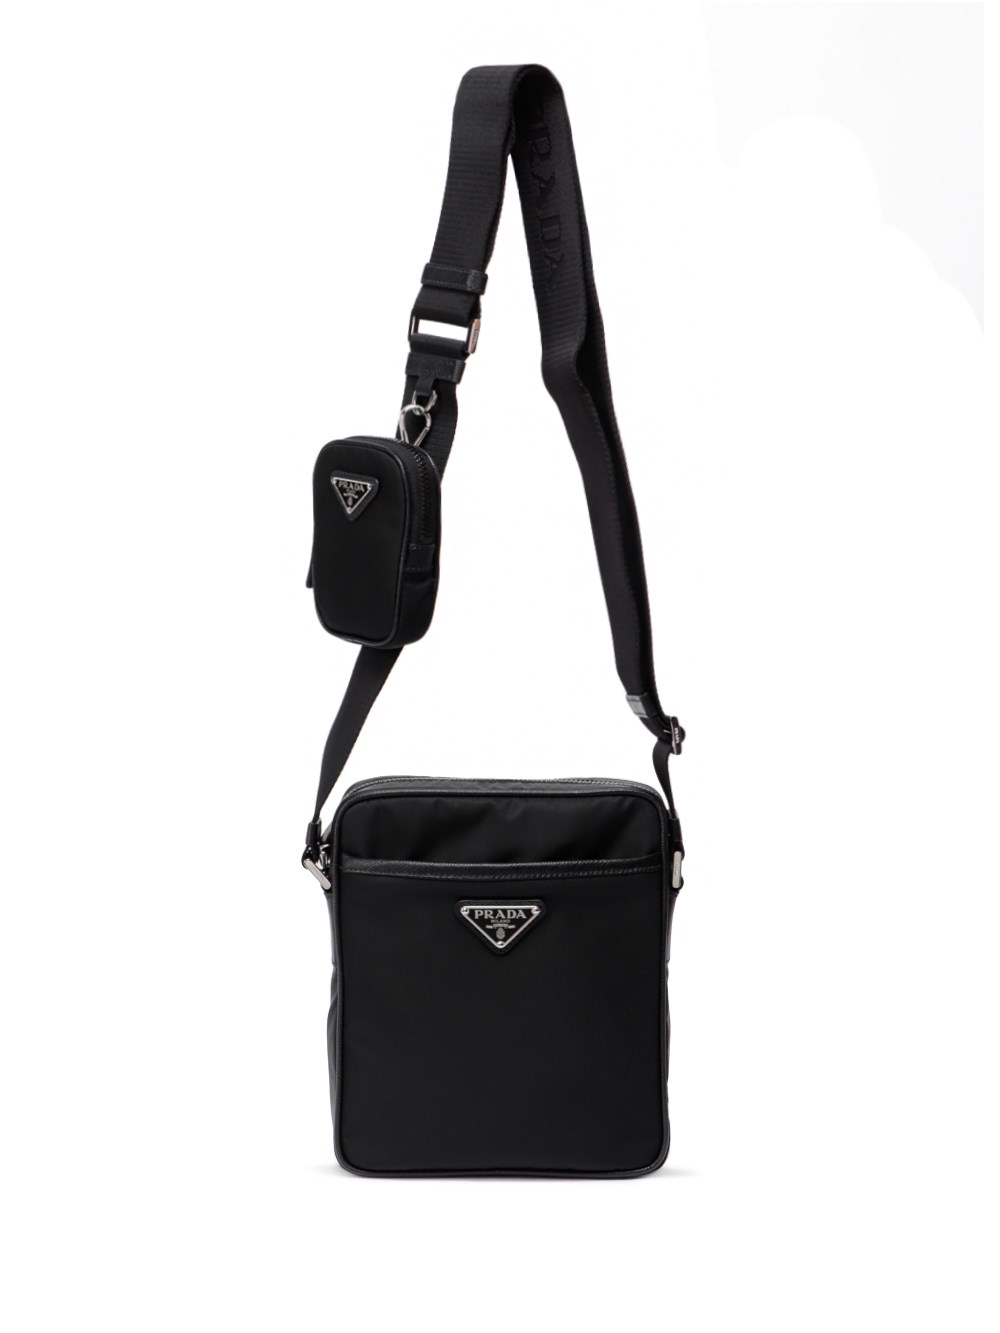 Prada Re-Nylon Saffiano Leather Shoulder Bag